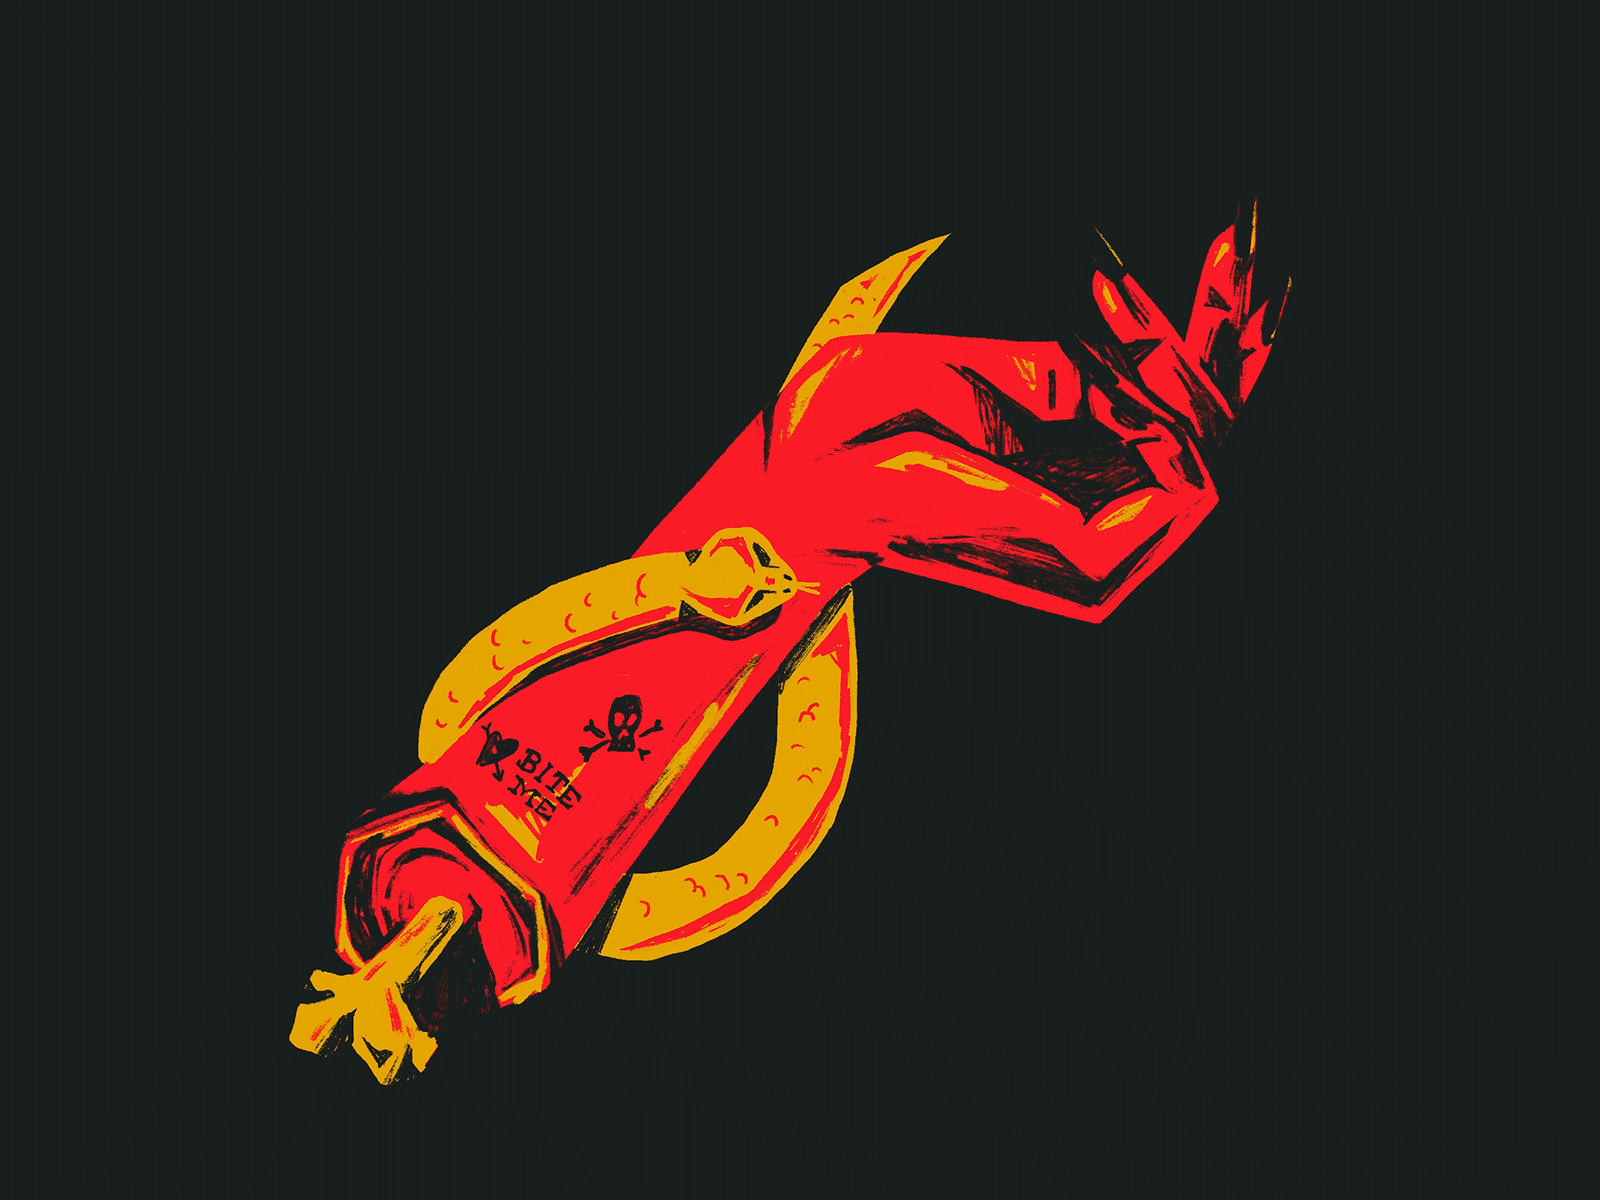 Shedevil animation cool devil hell illustration procreate snake